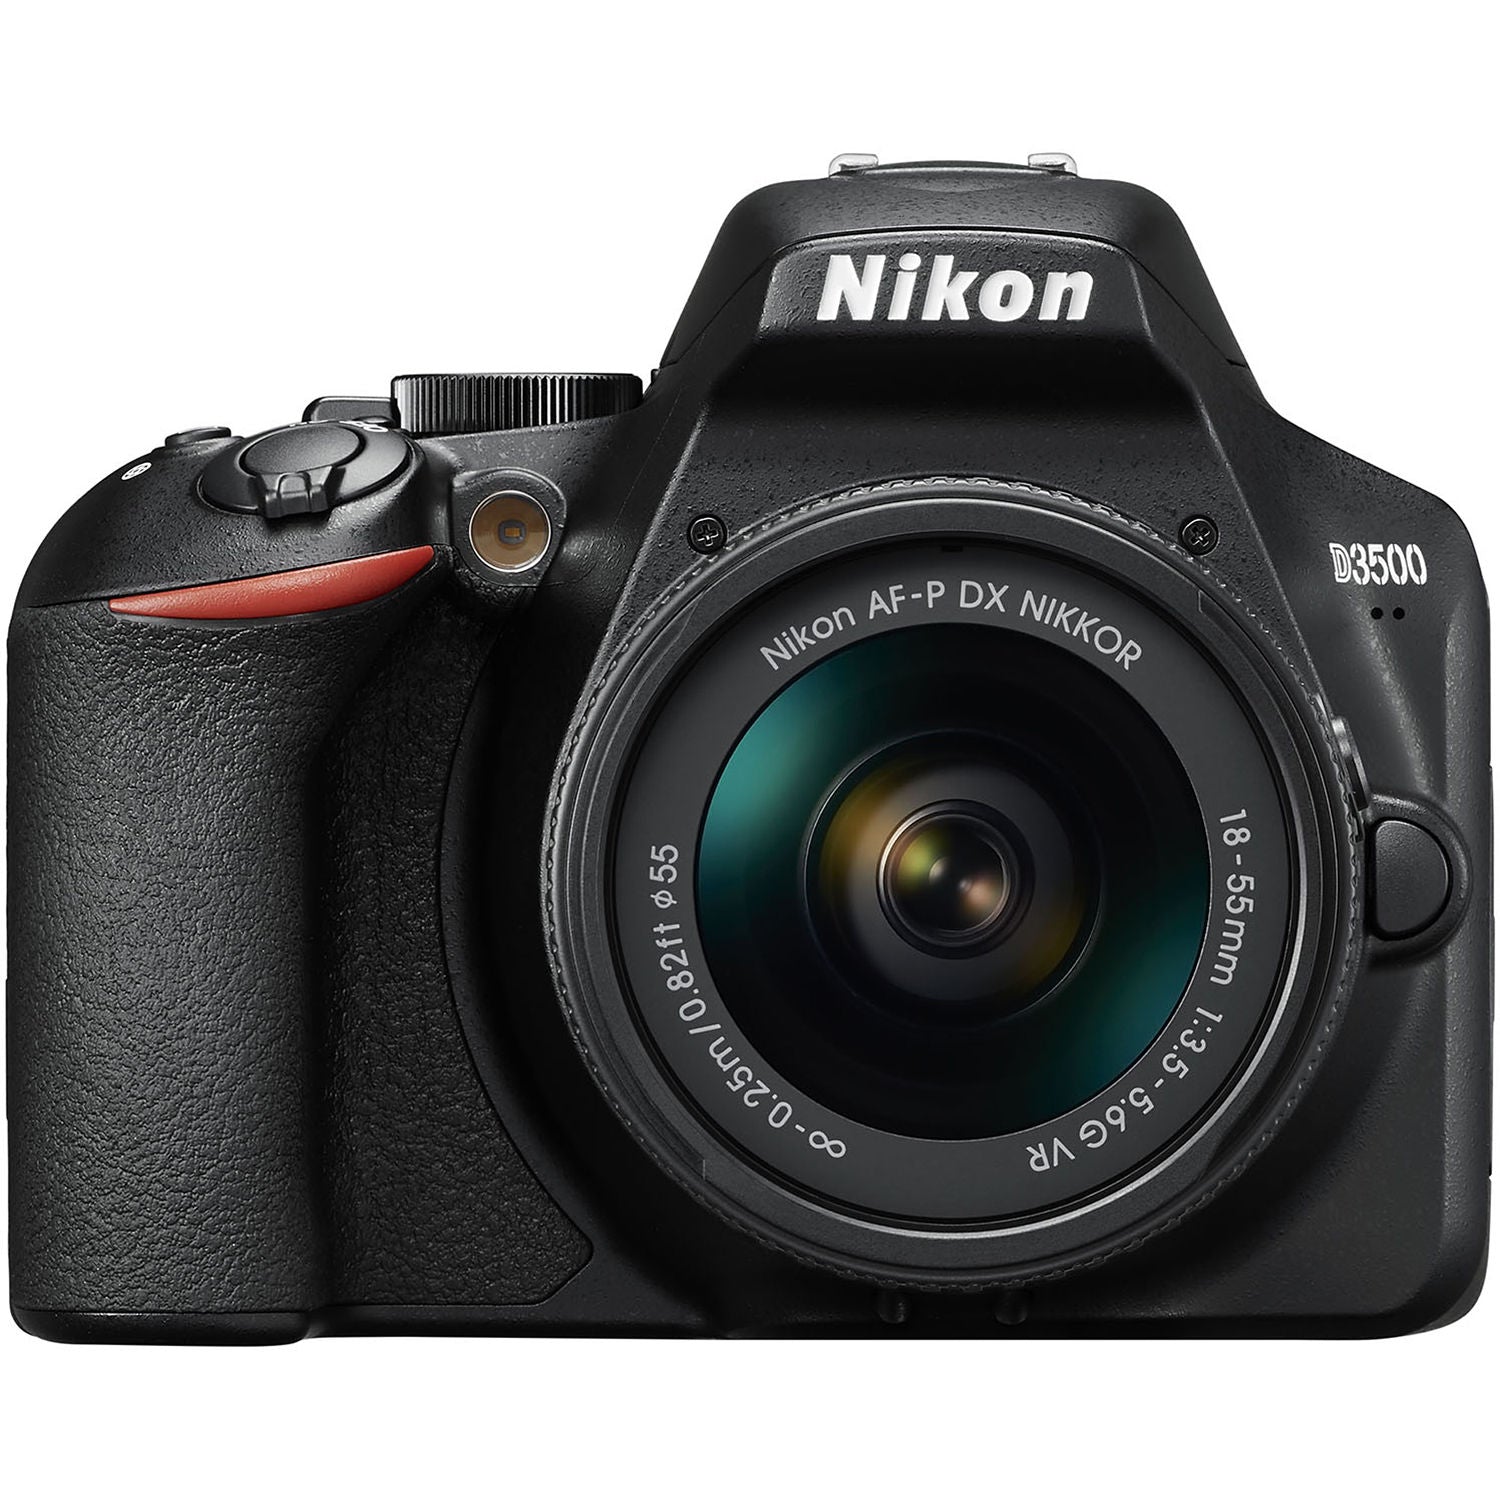 Nikon D3500 DSLR Camera with AF-P 18-55mm VR Lens Bundle � SanDisk 32GB SD Card + 9PC Filter + MORE - International